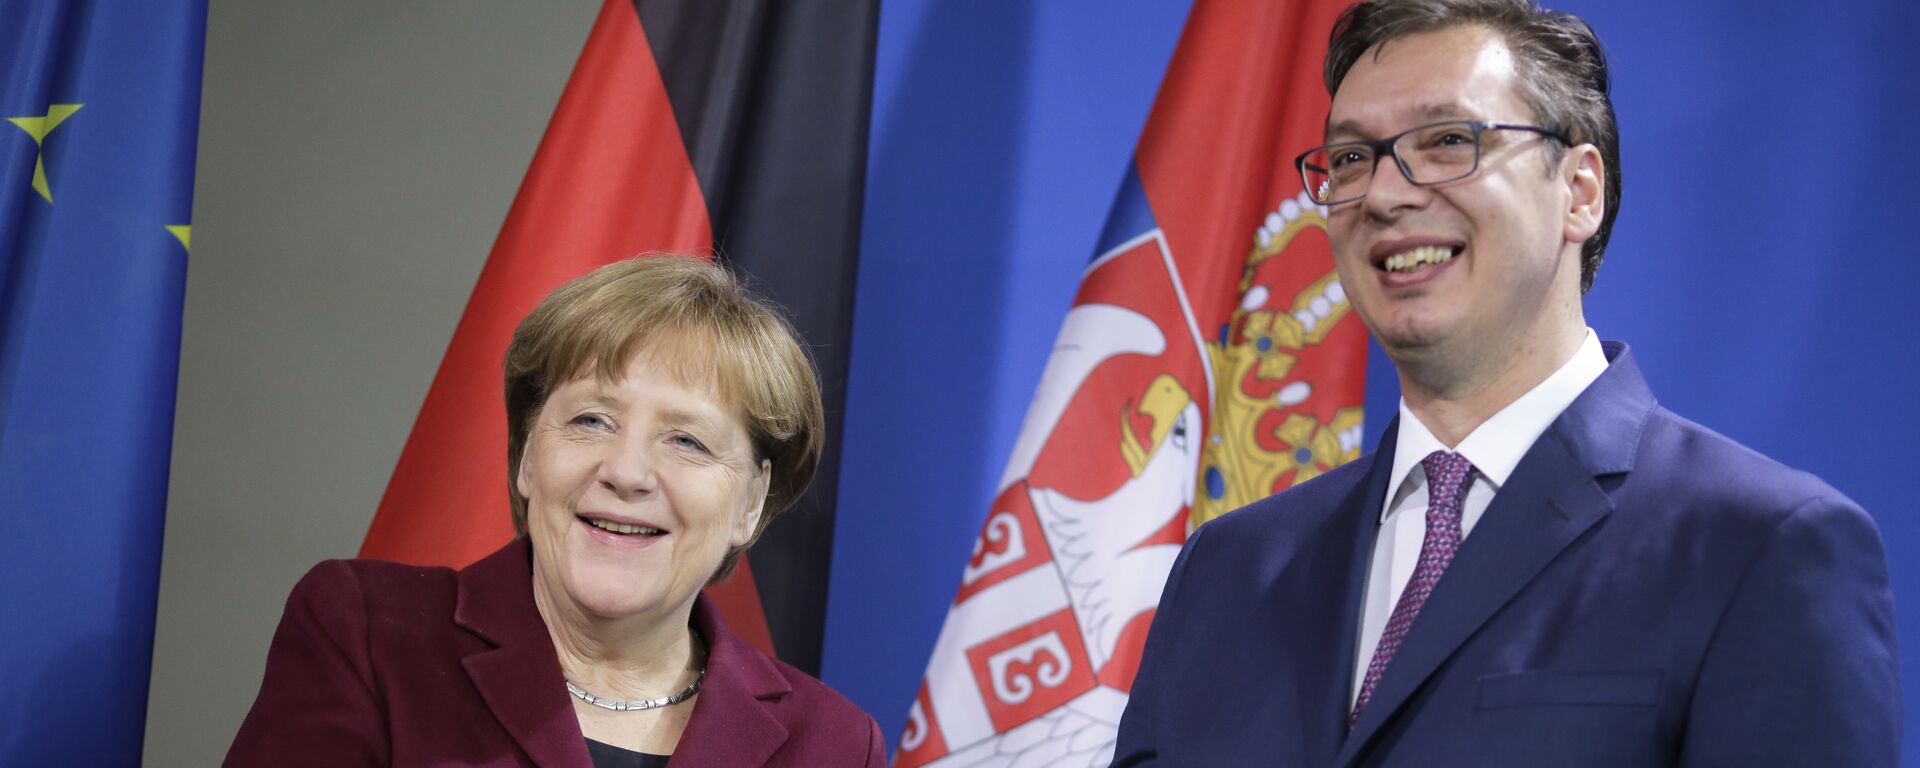 Premijer Srbije Aleksandar Vučić sa nemačkom kancelarkom Angelom Merkel tokom susreta u Beogradu - Sputnik Srbija, 1920, 31.08.2021